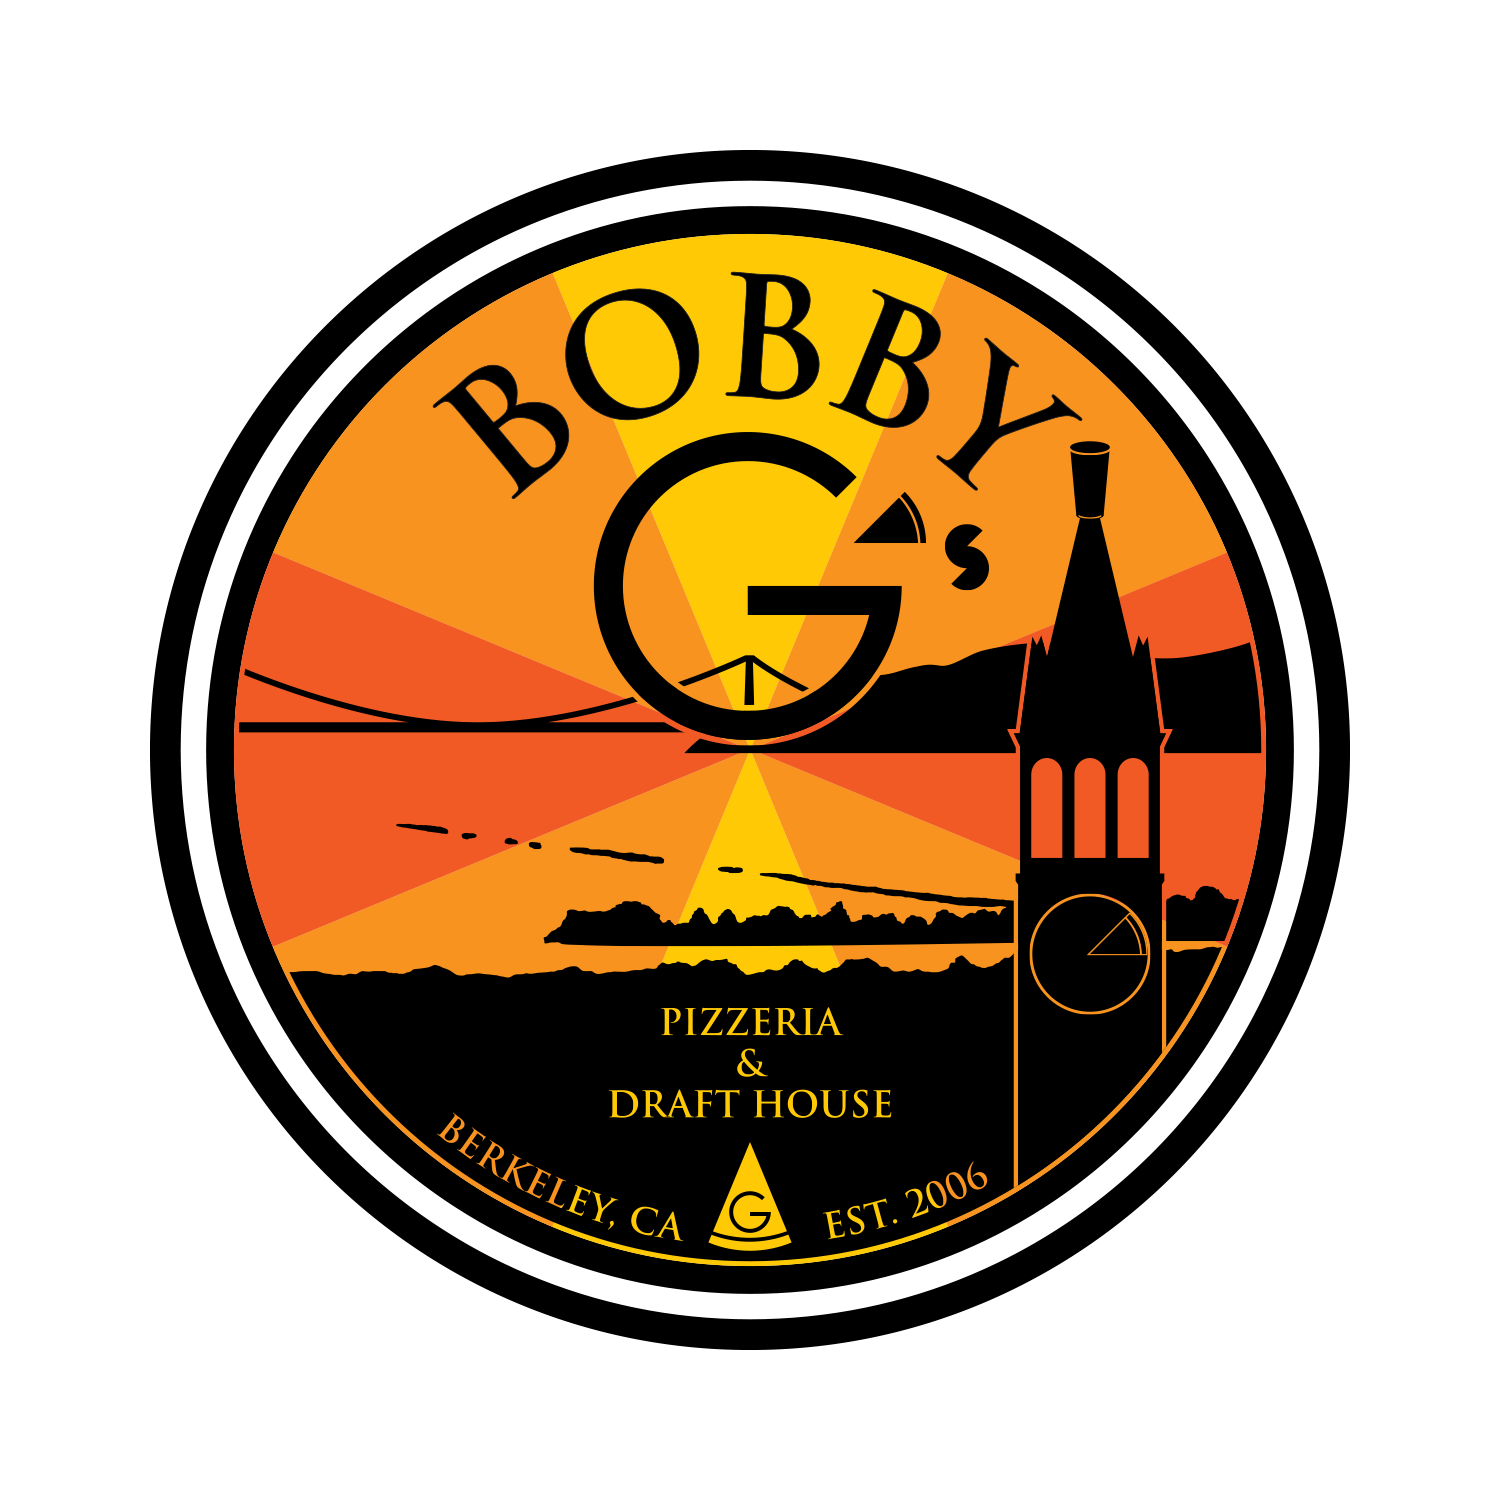 Bobby G's Logo